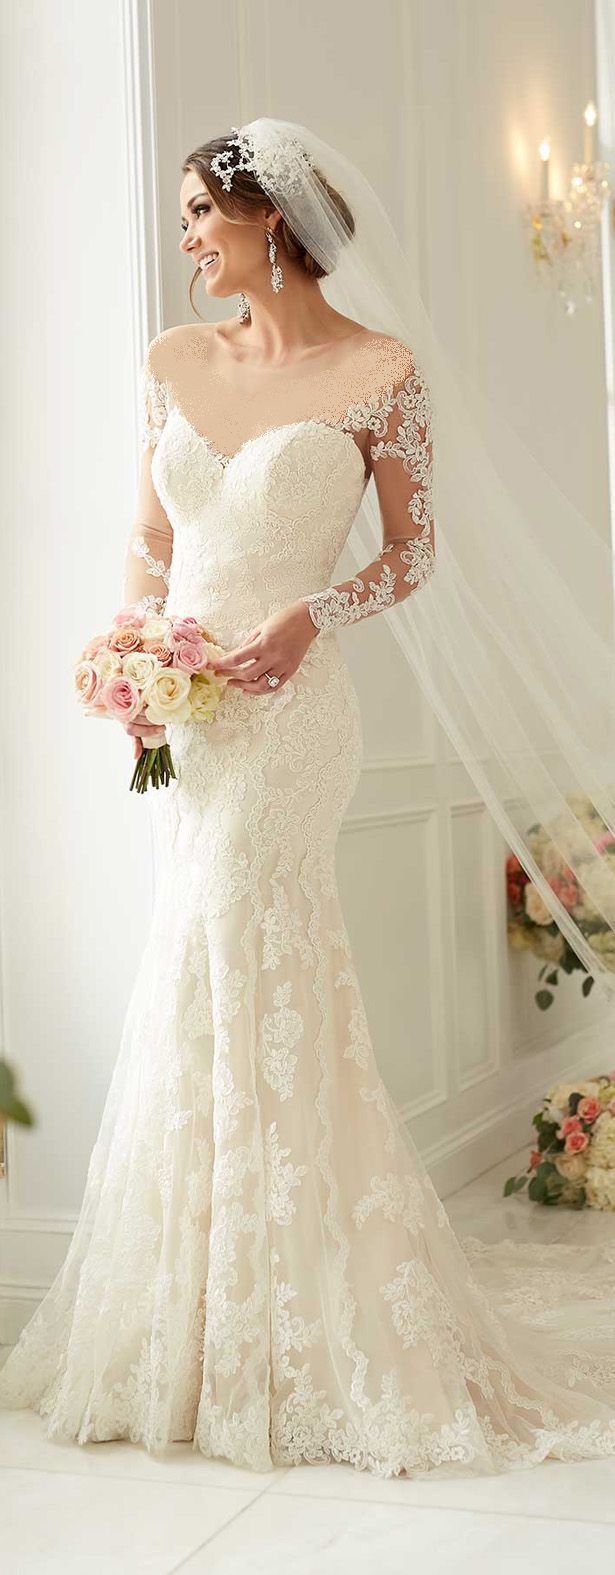 ,مدل لباس عروس دانتل دار,لباس عروس,جدیدترین مدل لباس عروس,[categoriy]